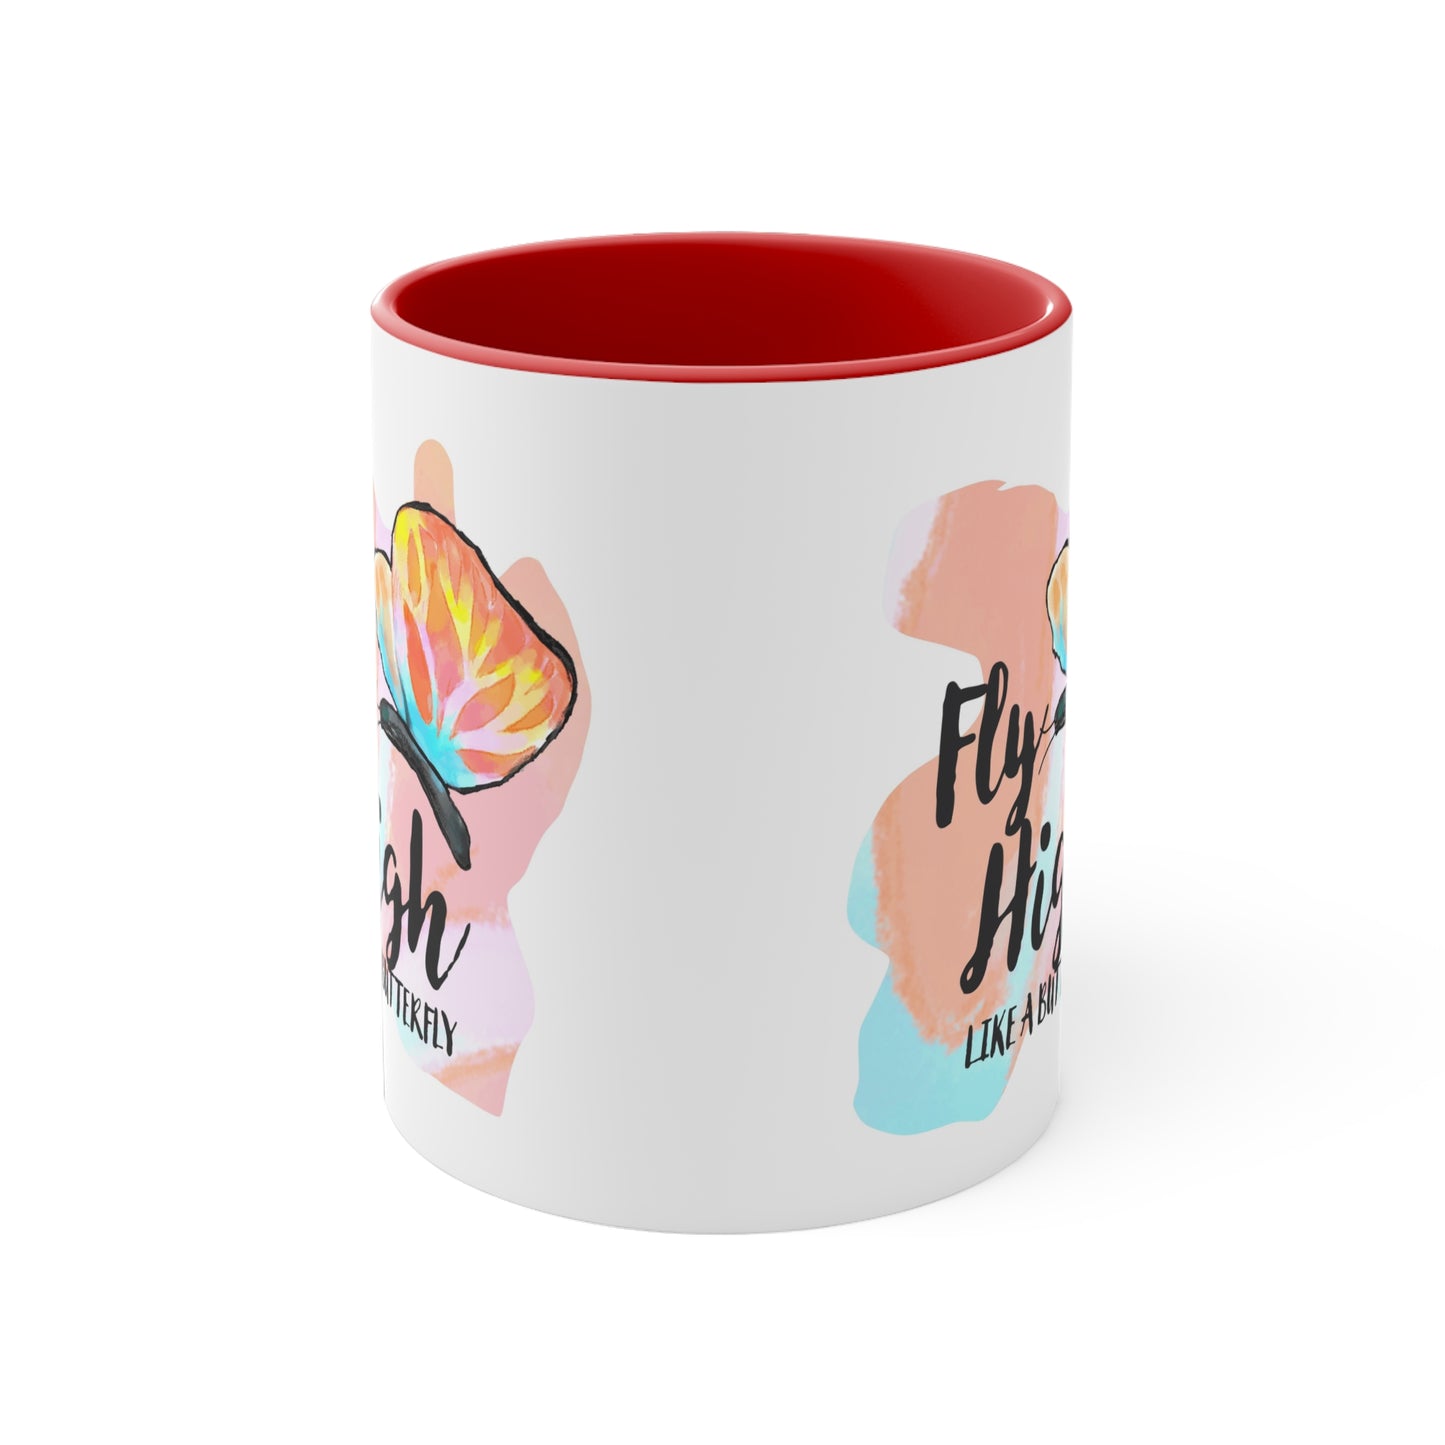 Fly High Accent Coffee Mug, 11oz